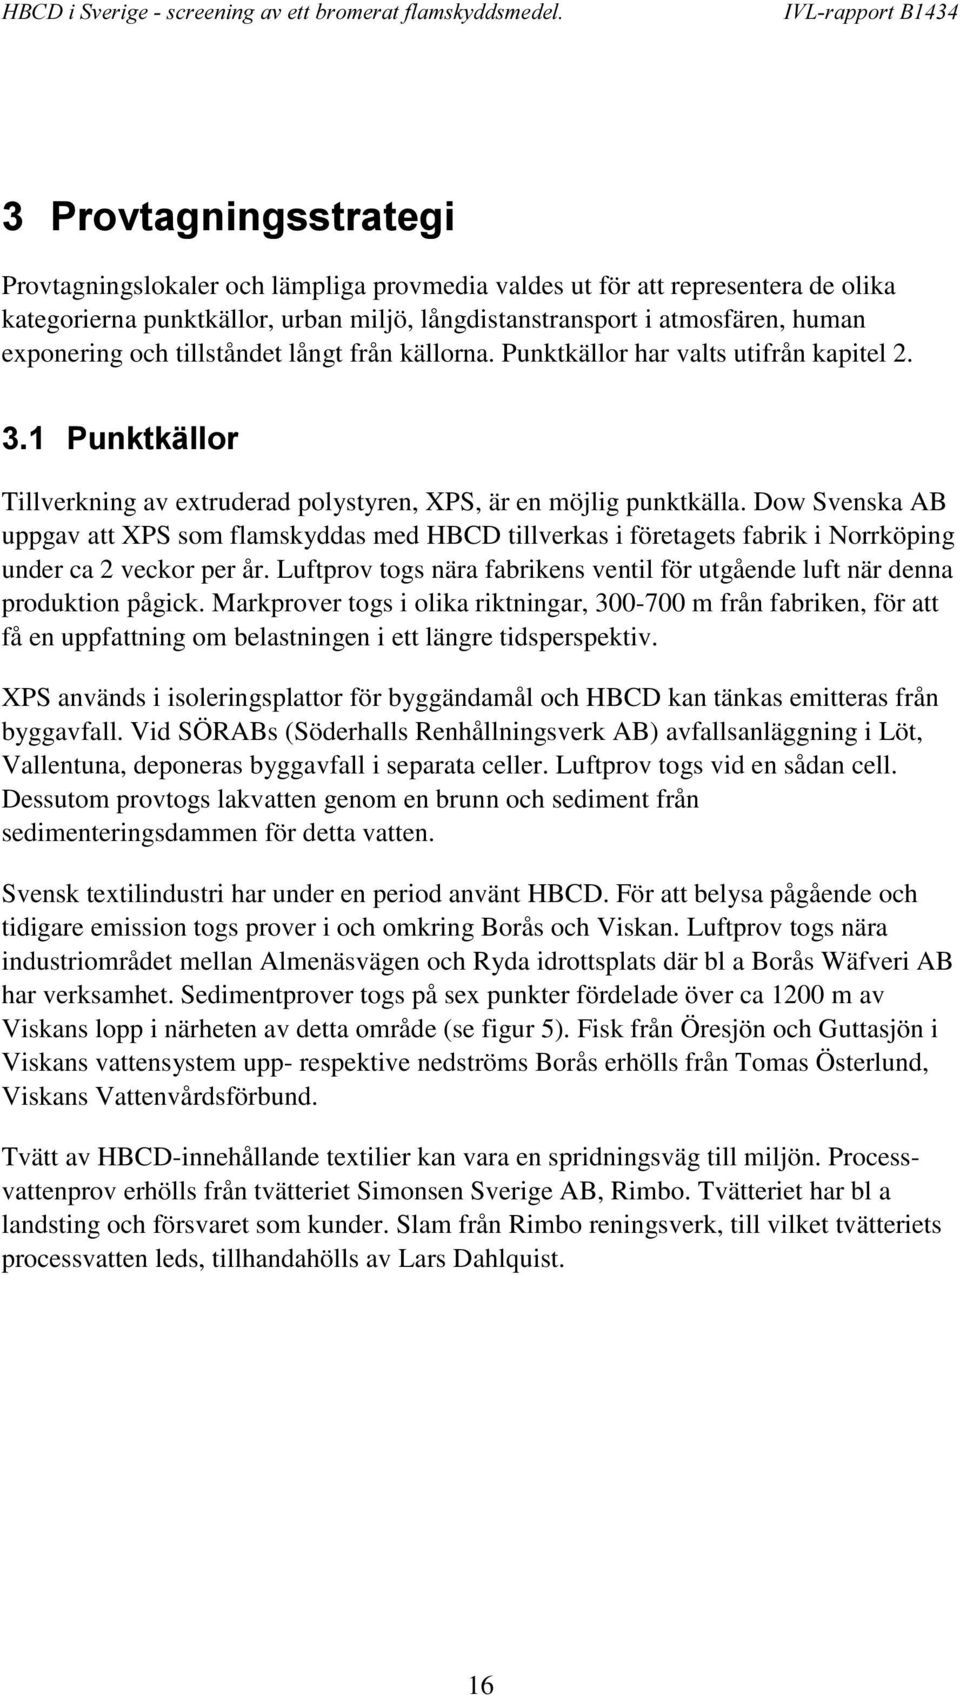 Dow Svenska AB uppgav att XPS som flamskyddas med HBCD tillverkas i företagets fabrik i Norrköping under ca 2 veckor per år.